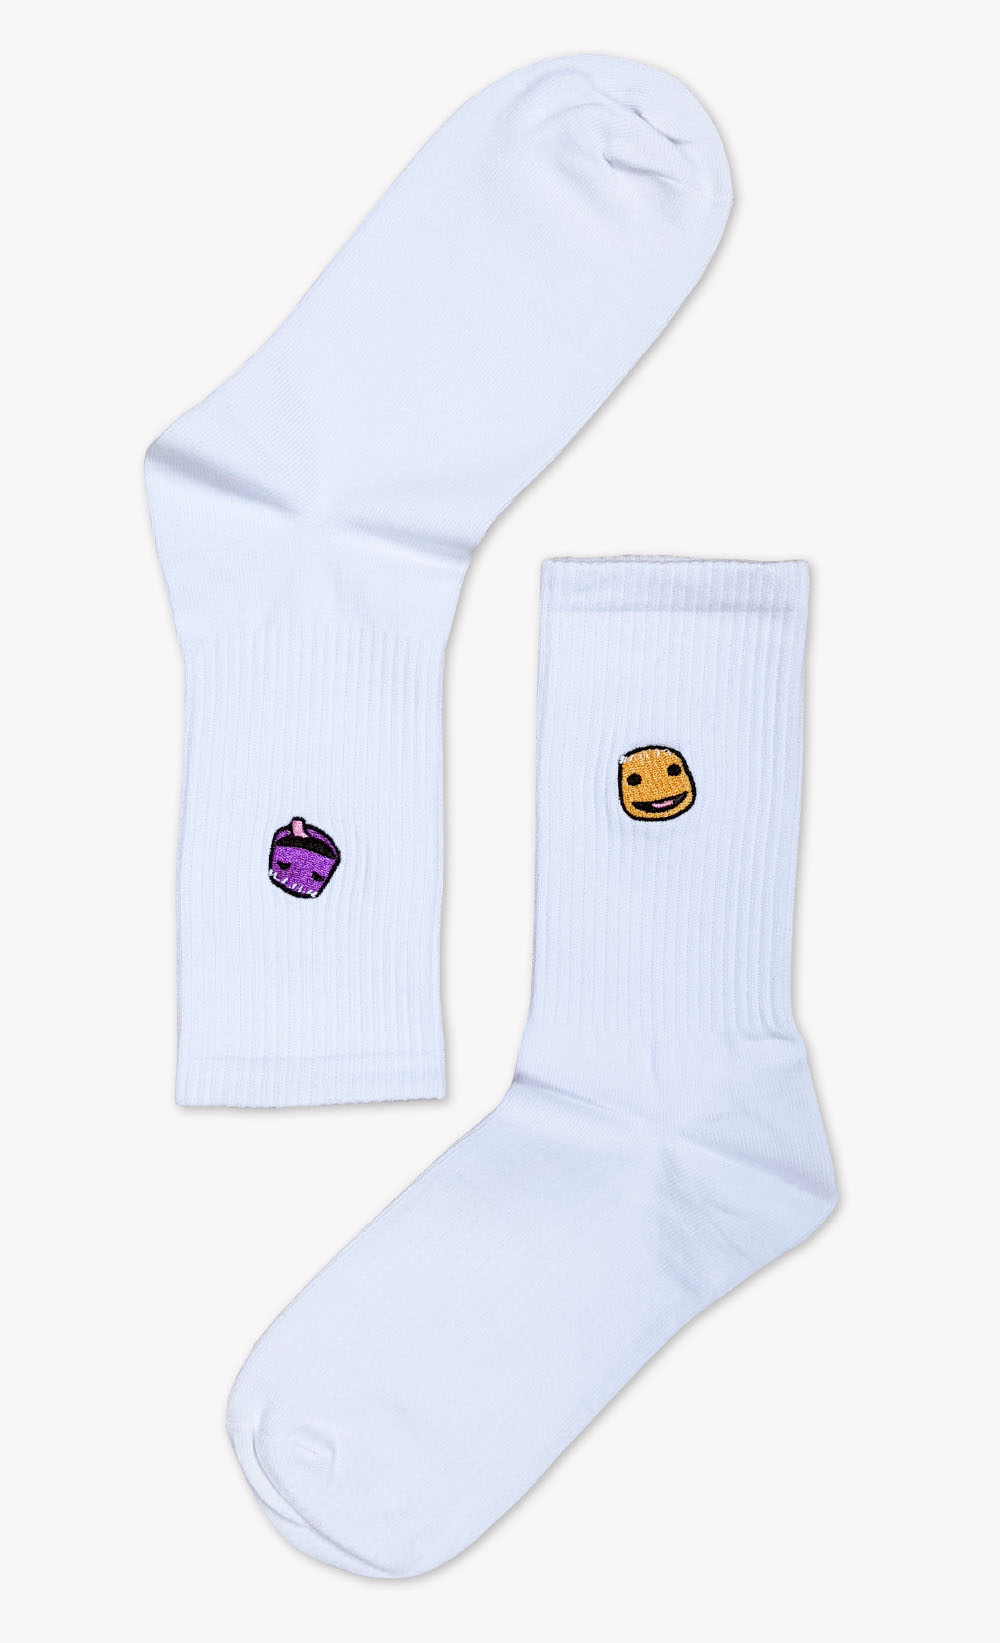 Sackboy's Feels Socks (WHITE) - Insert Coin Clothing